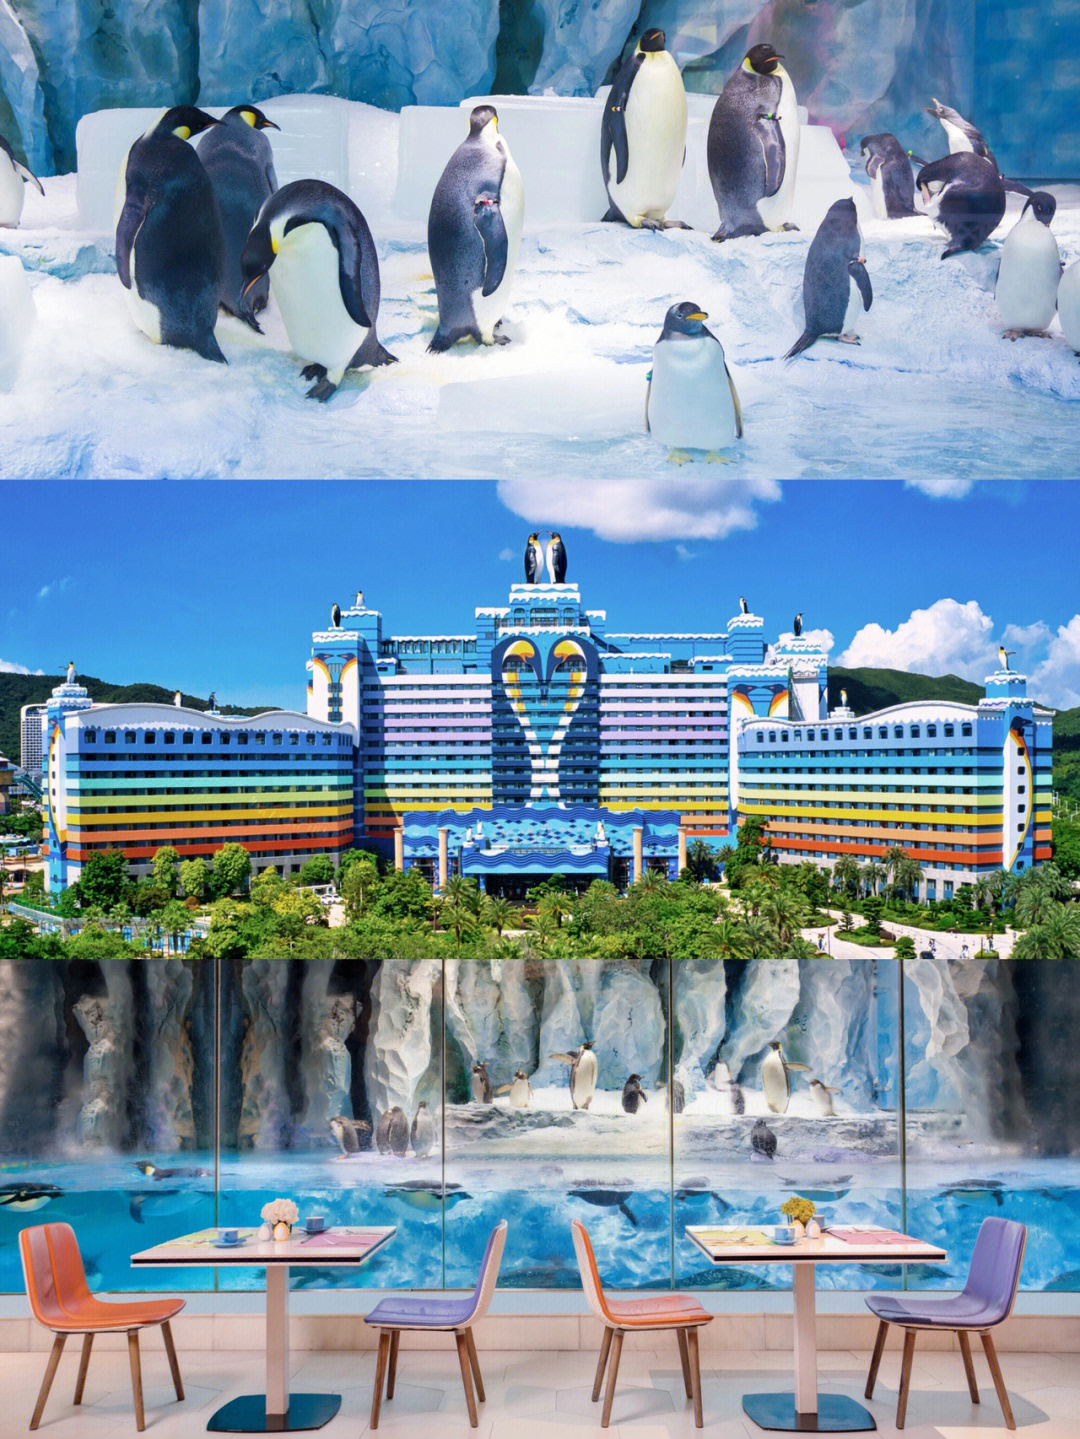 攻略入住珠海长隆企鹅酒店是什么体验